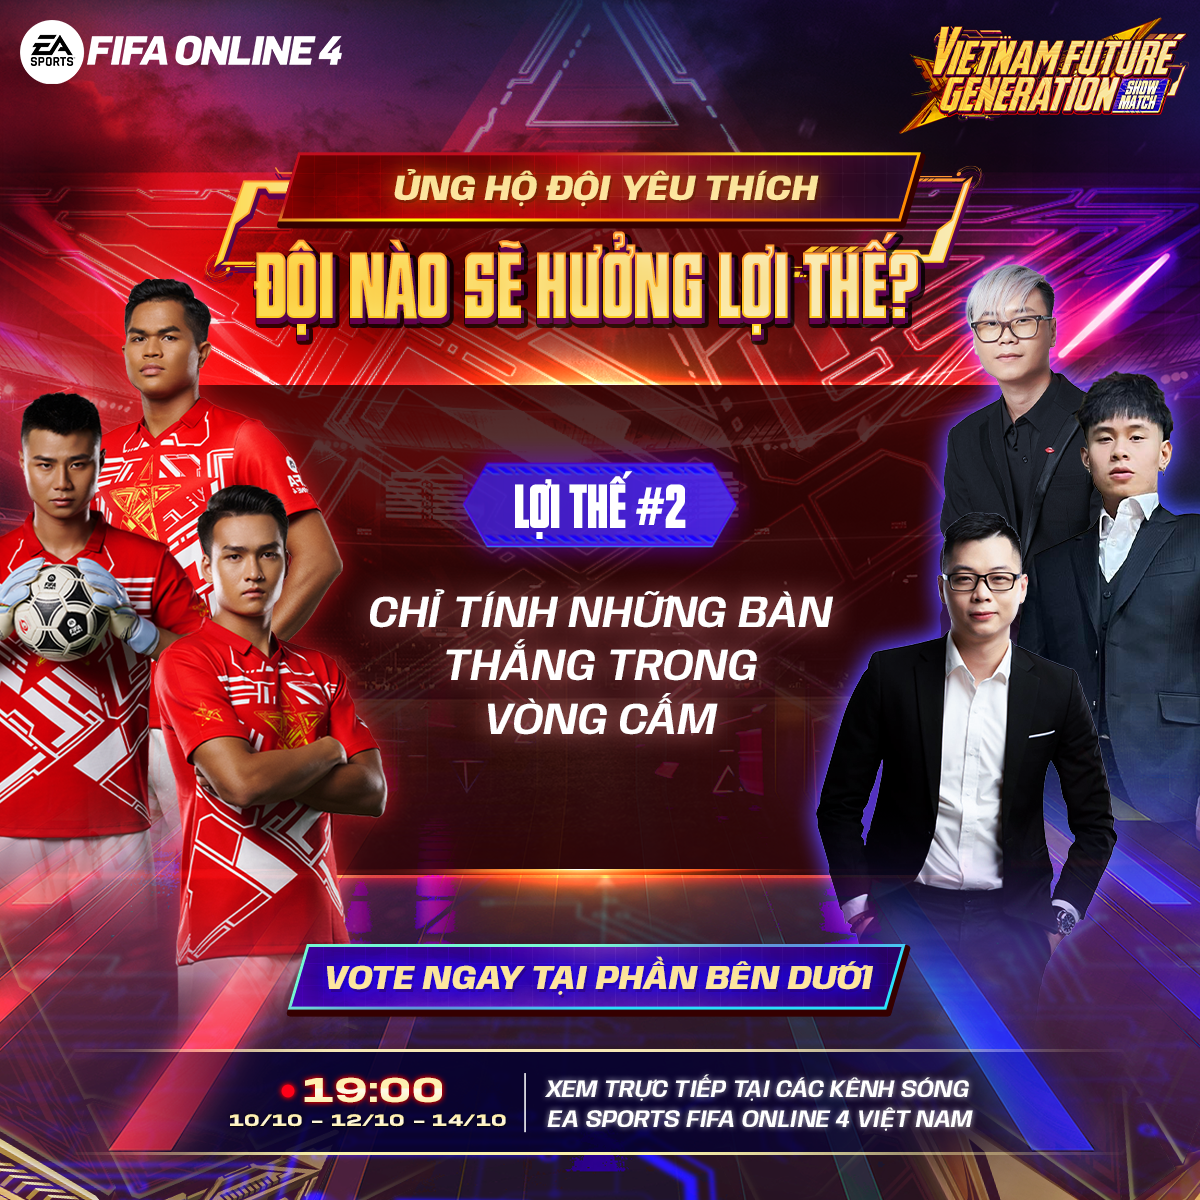 Refund Gaming tranh tài cùng U23 Việt Nam tại FIFA Online 4 VFG Showmatch 2022 5-1665124523977968000409-1665128188424-16651281884971897077249